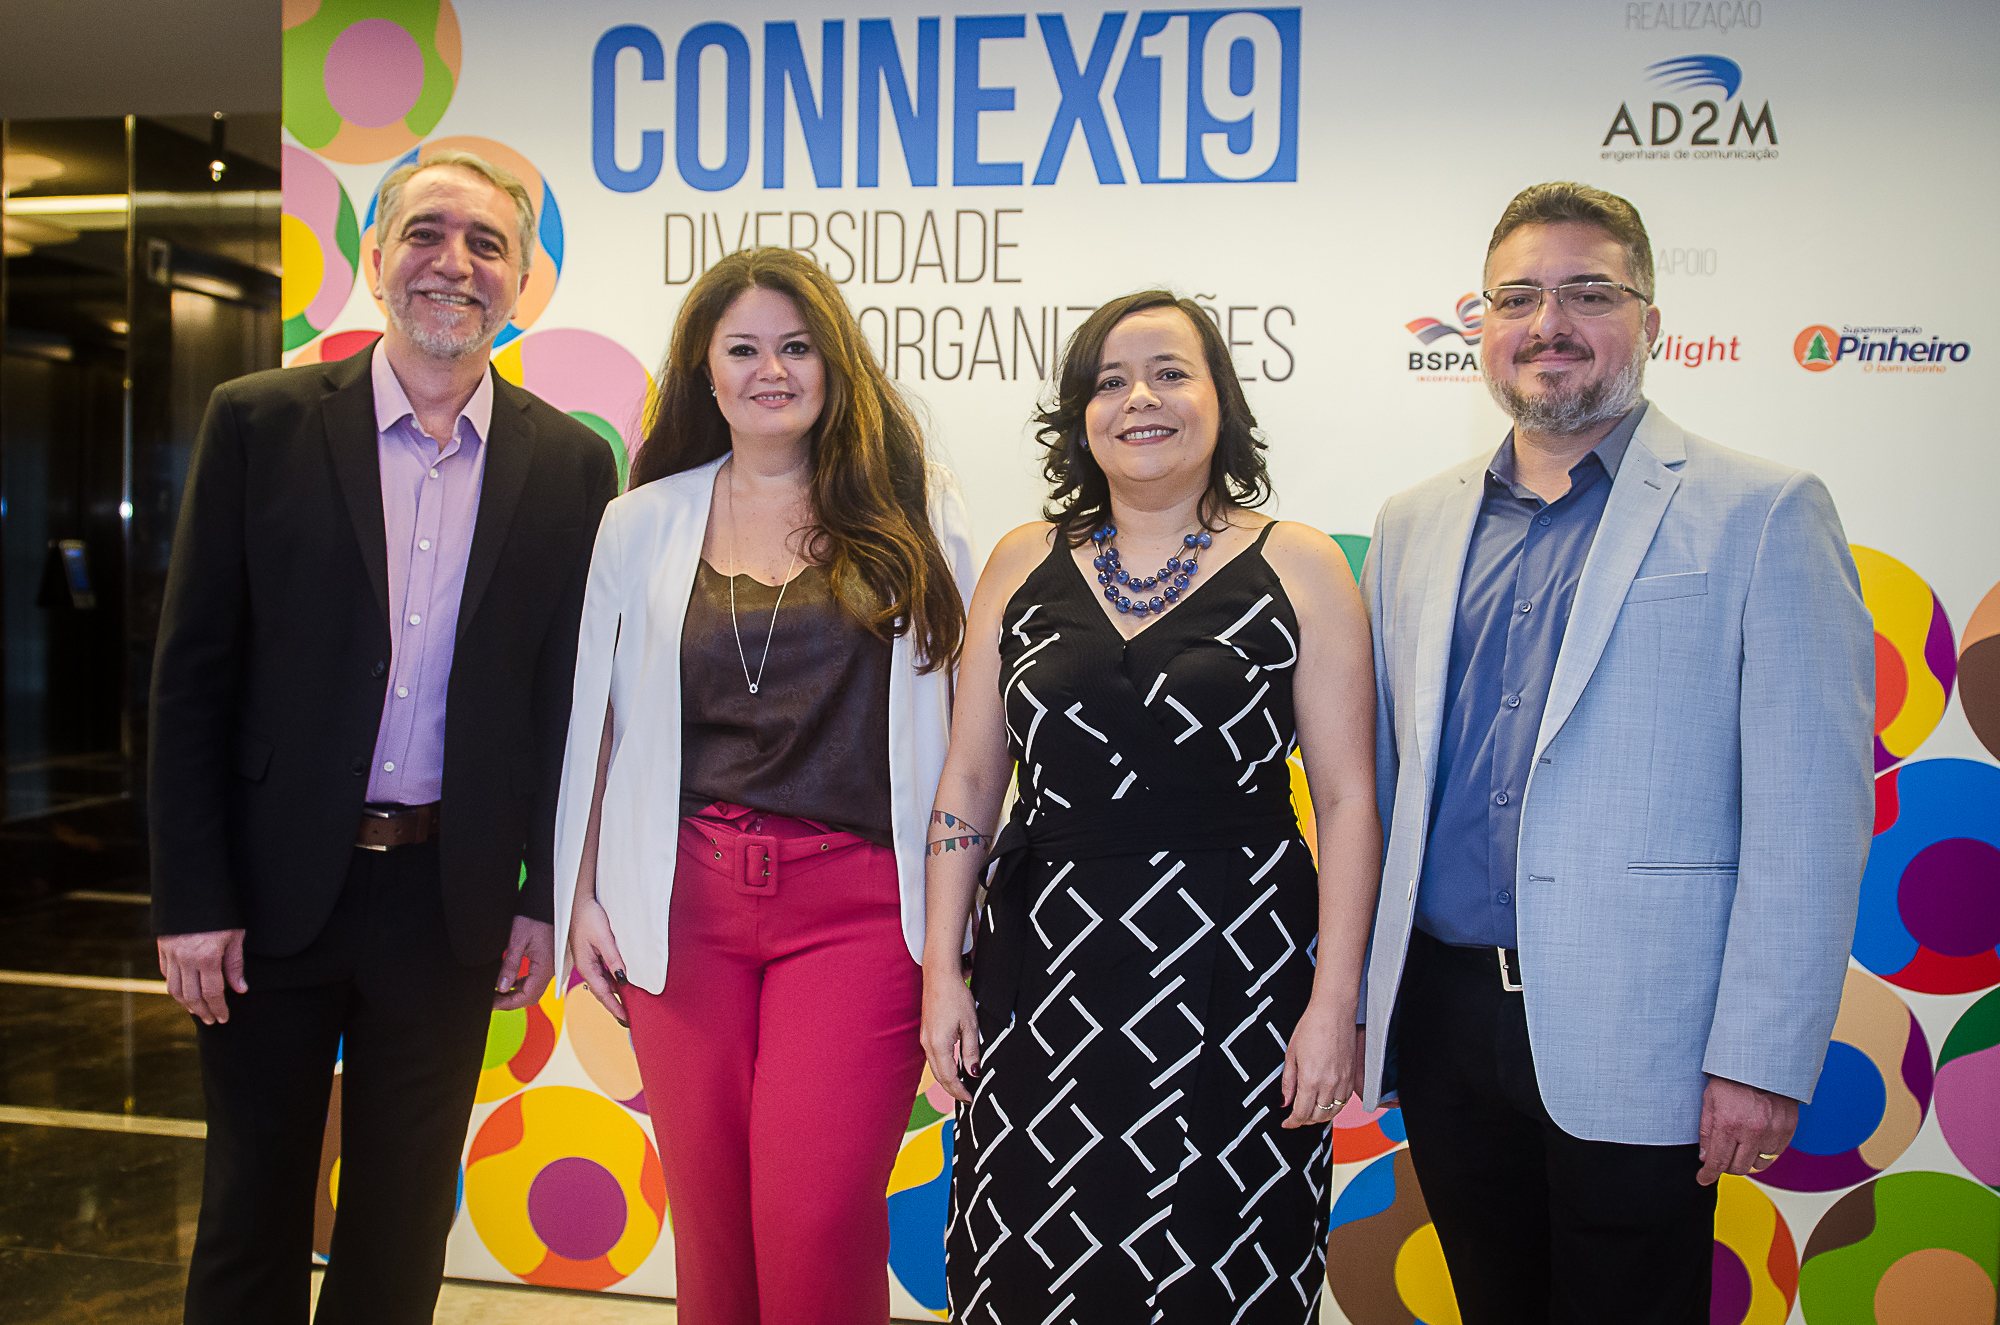 AD2M promove 1ª edição do Connex e traz Elaine Terceiro para palestrar sobre diversidade nas organizações